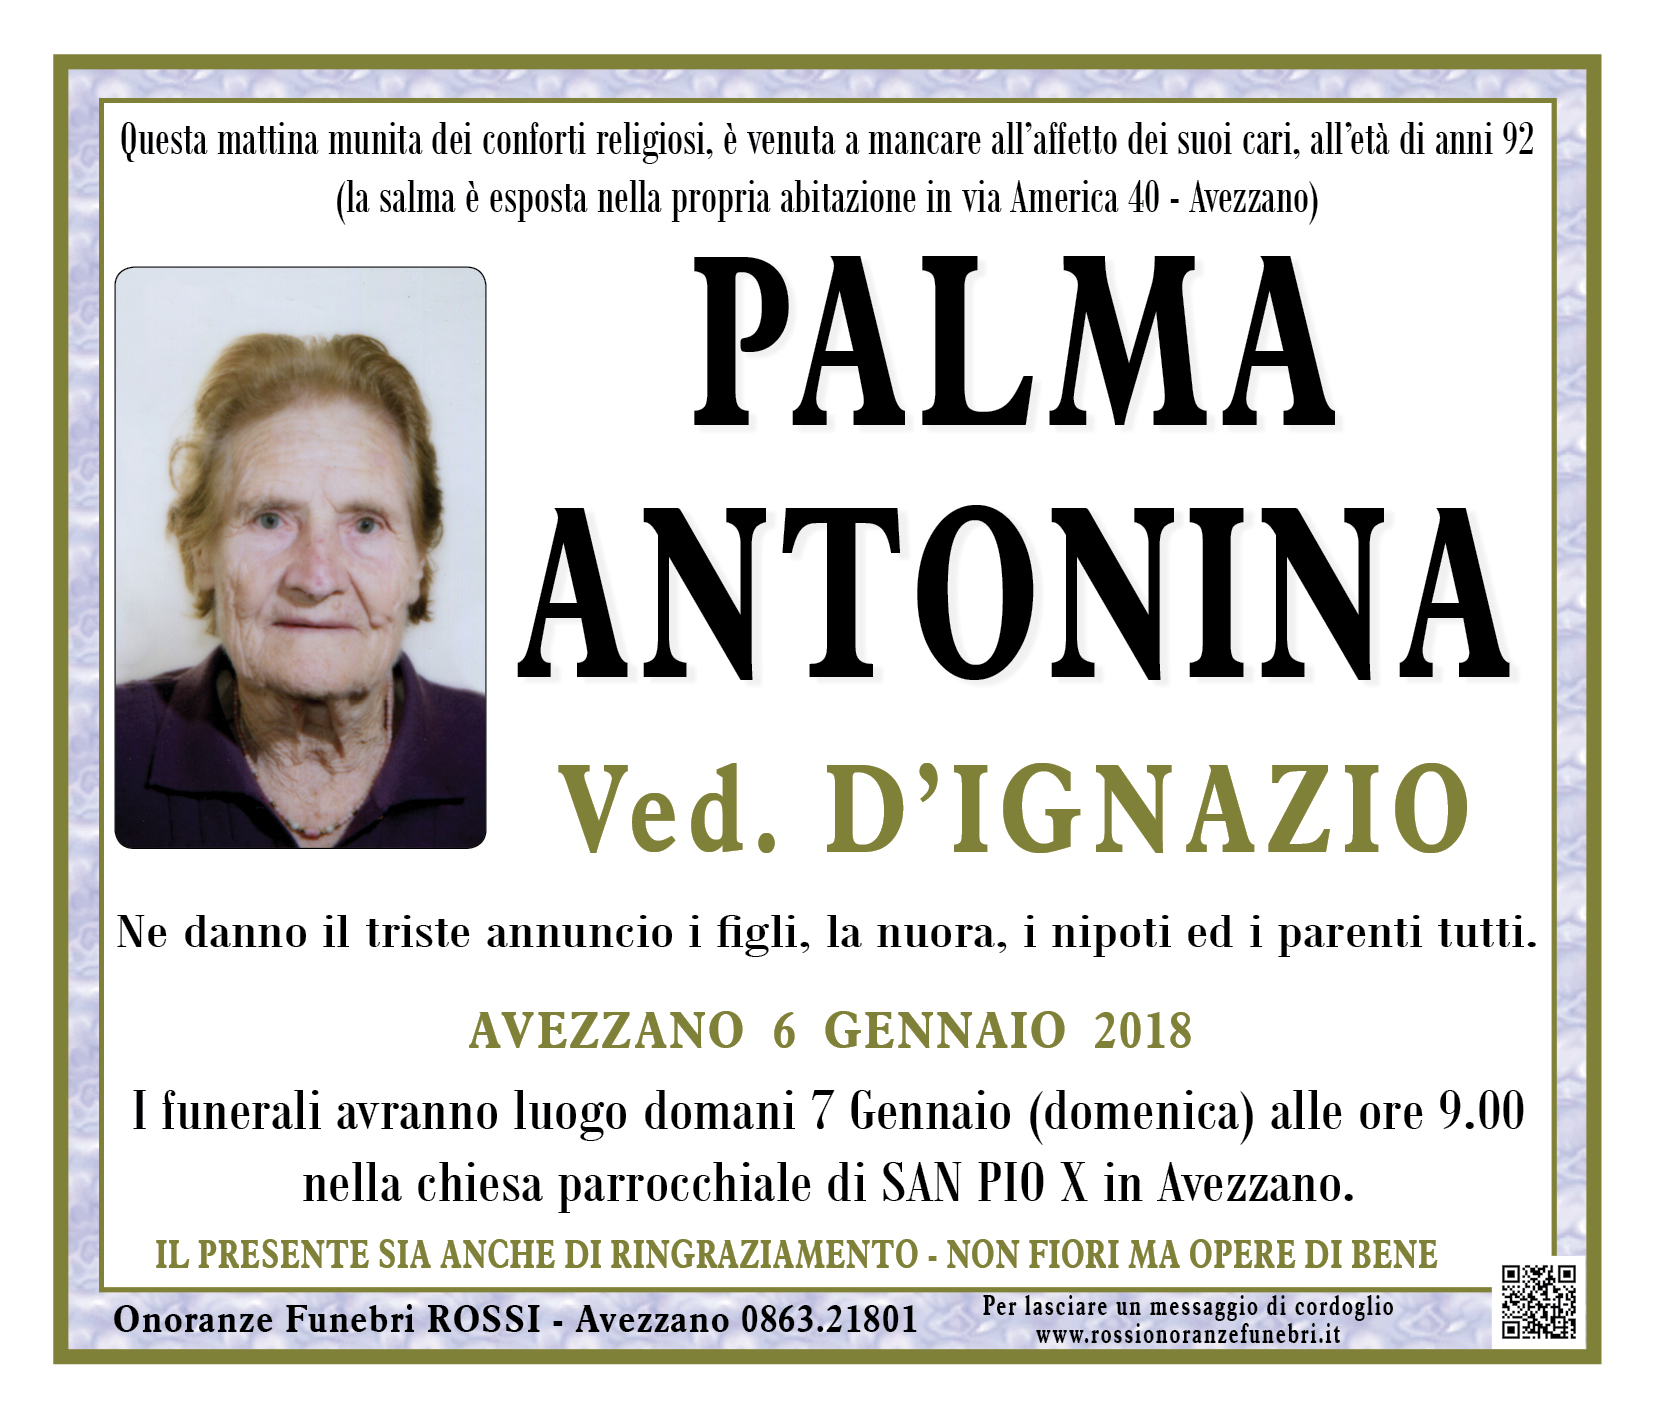 Antonina Palma